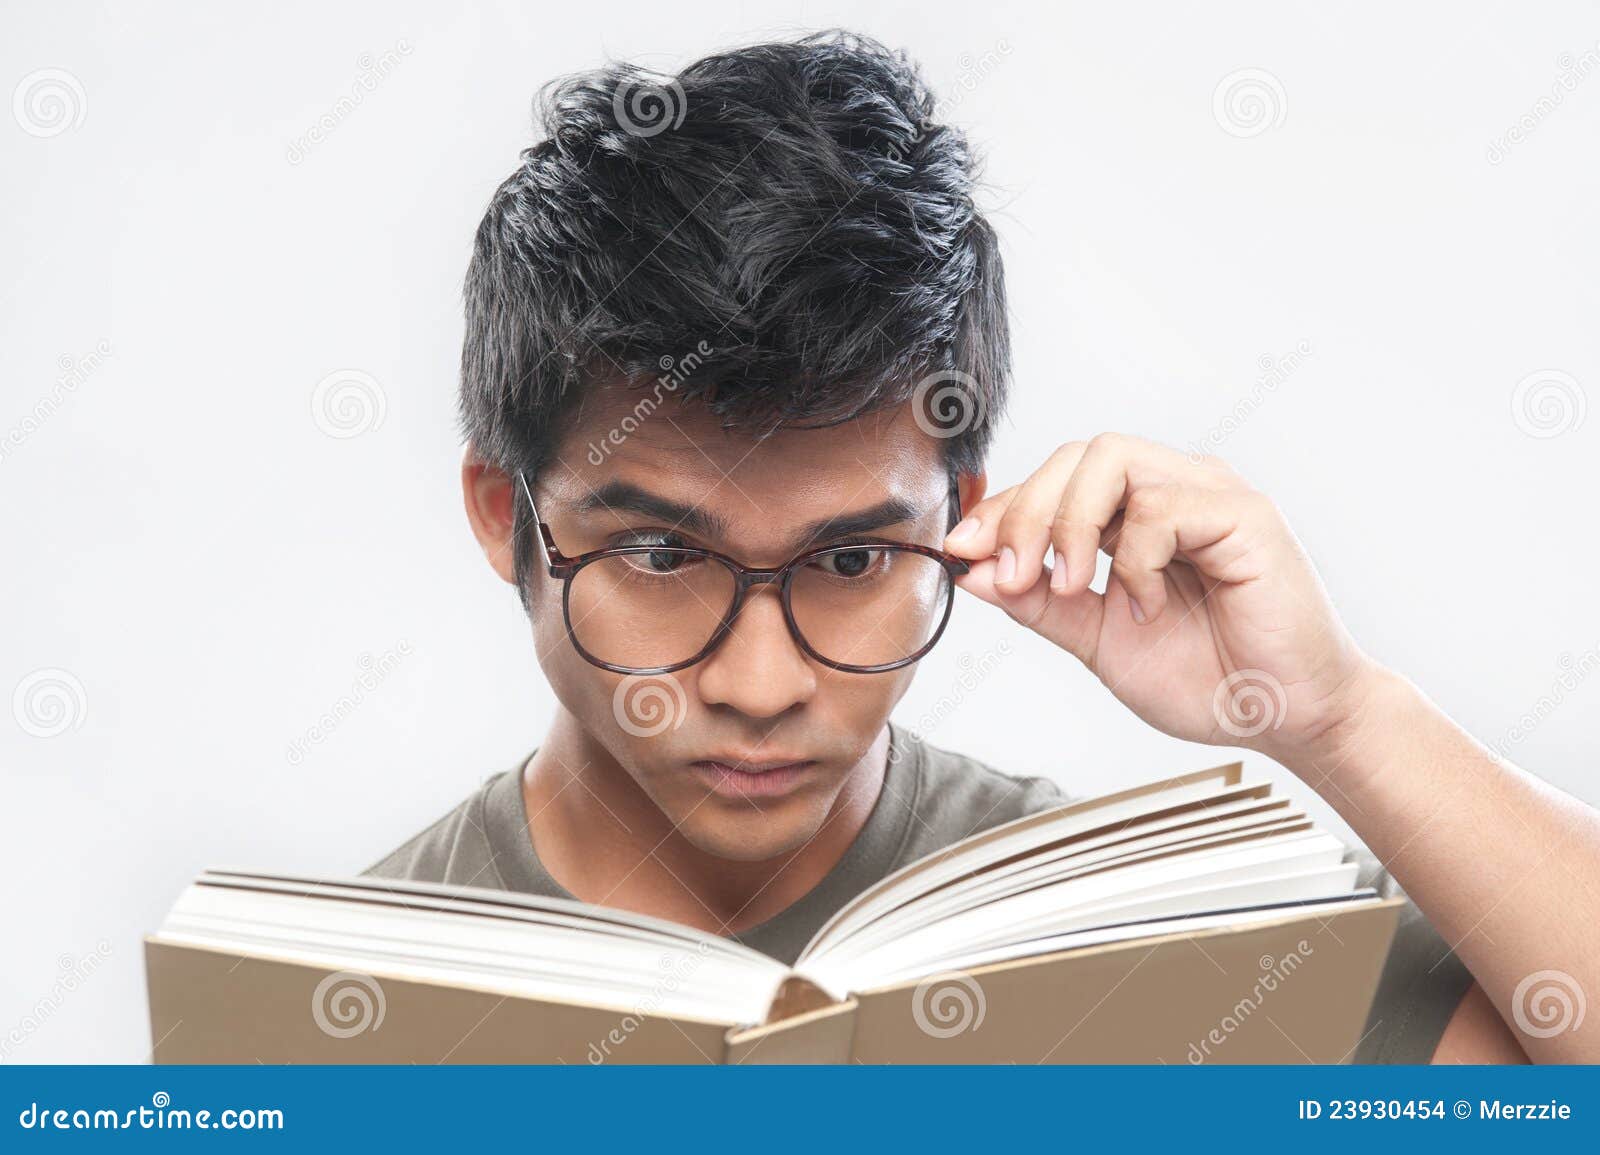 asian-nerd-studying-holding-glasses-2393